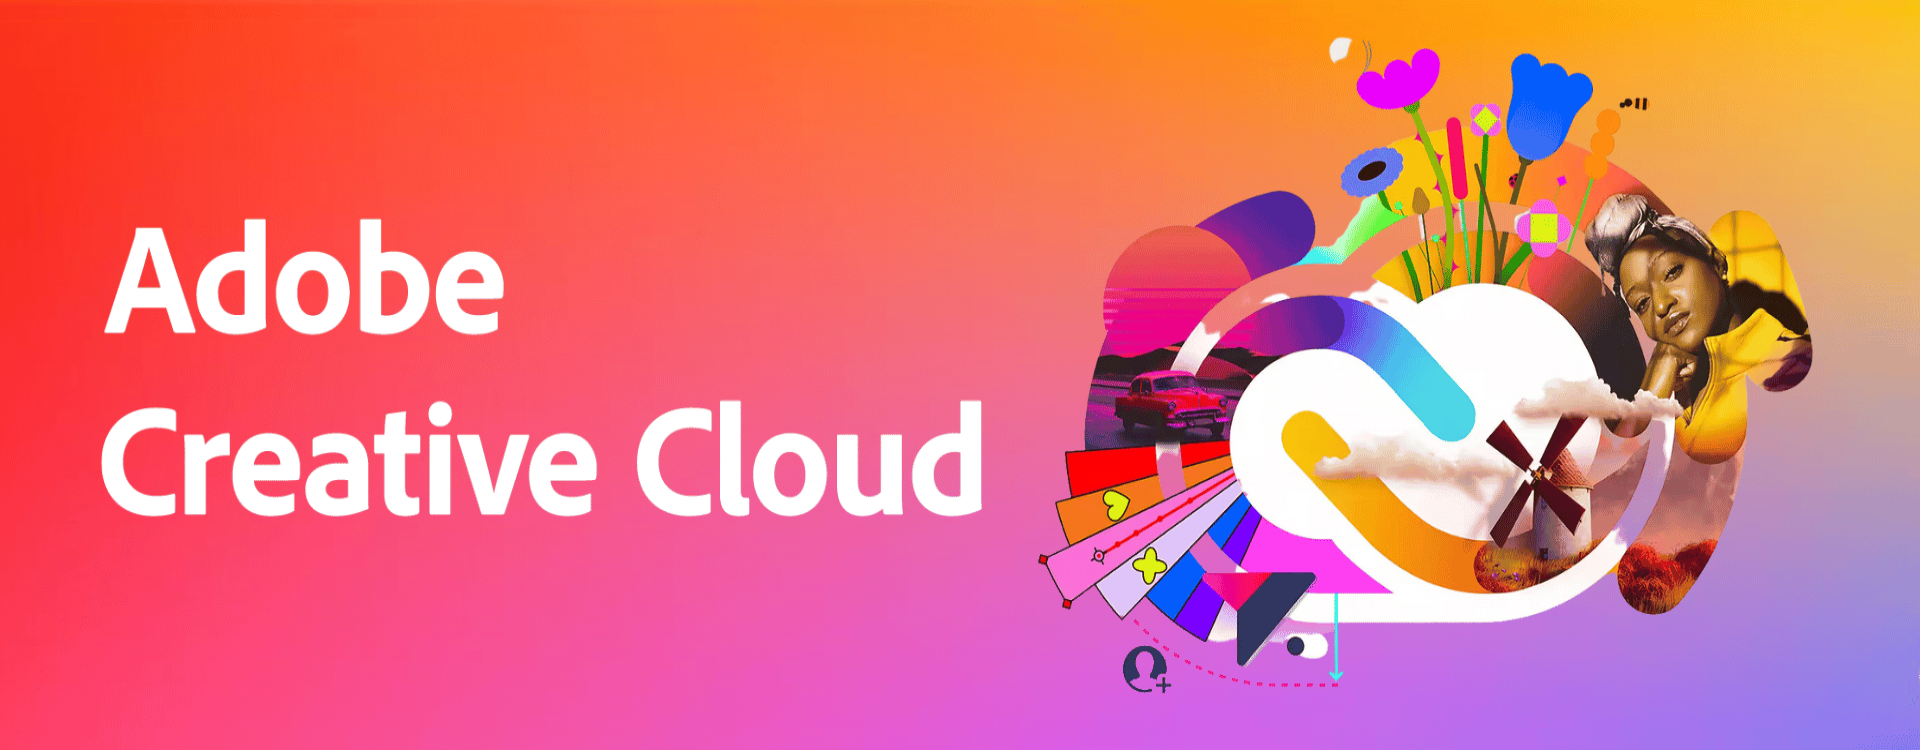 Tại sao doanh nghiệp ưu tiên lựa chọn Adobe Creative Cloud?